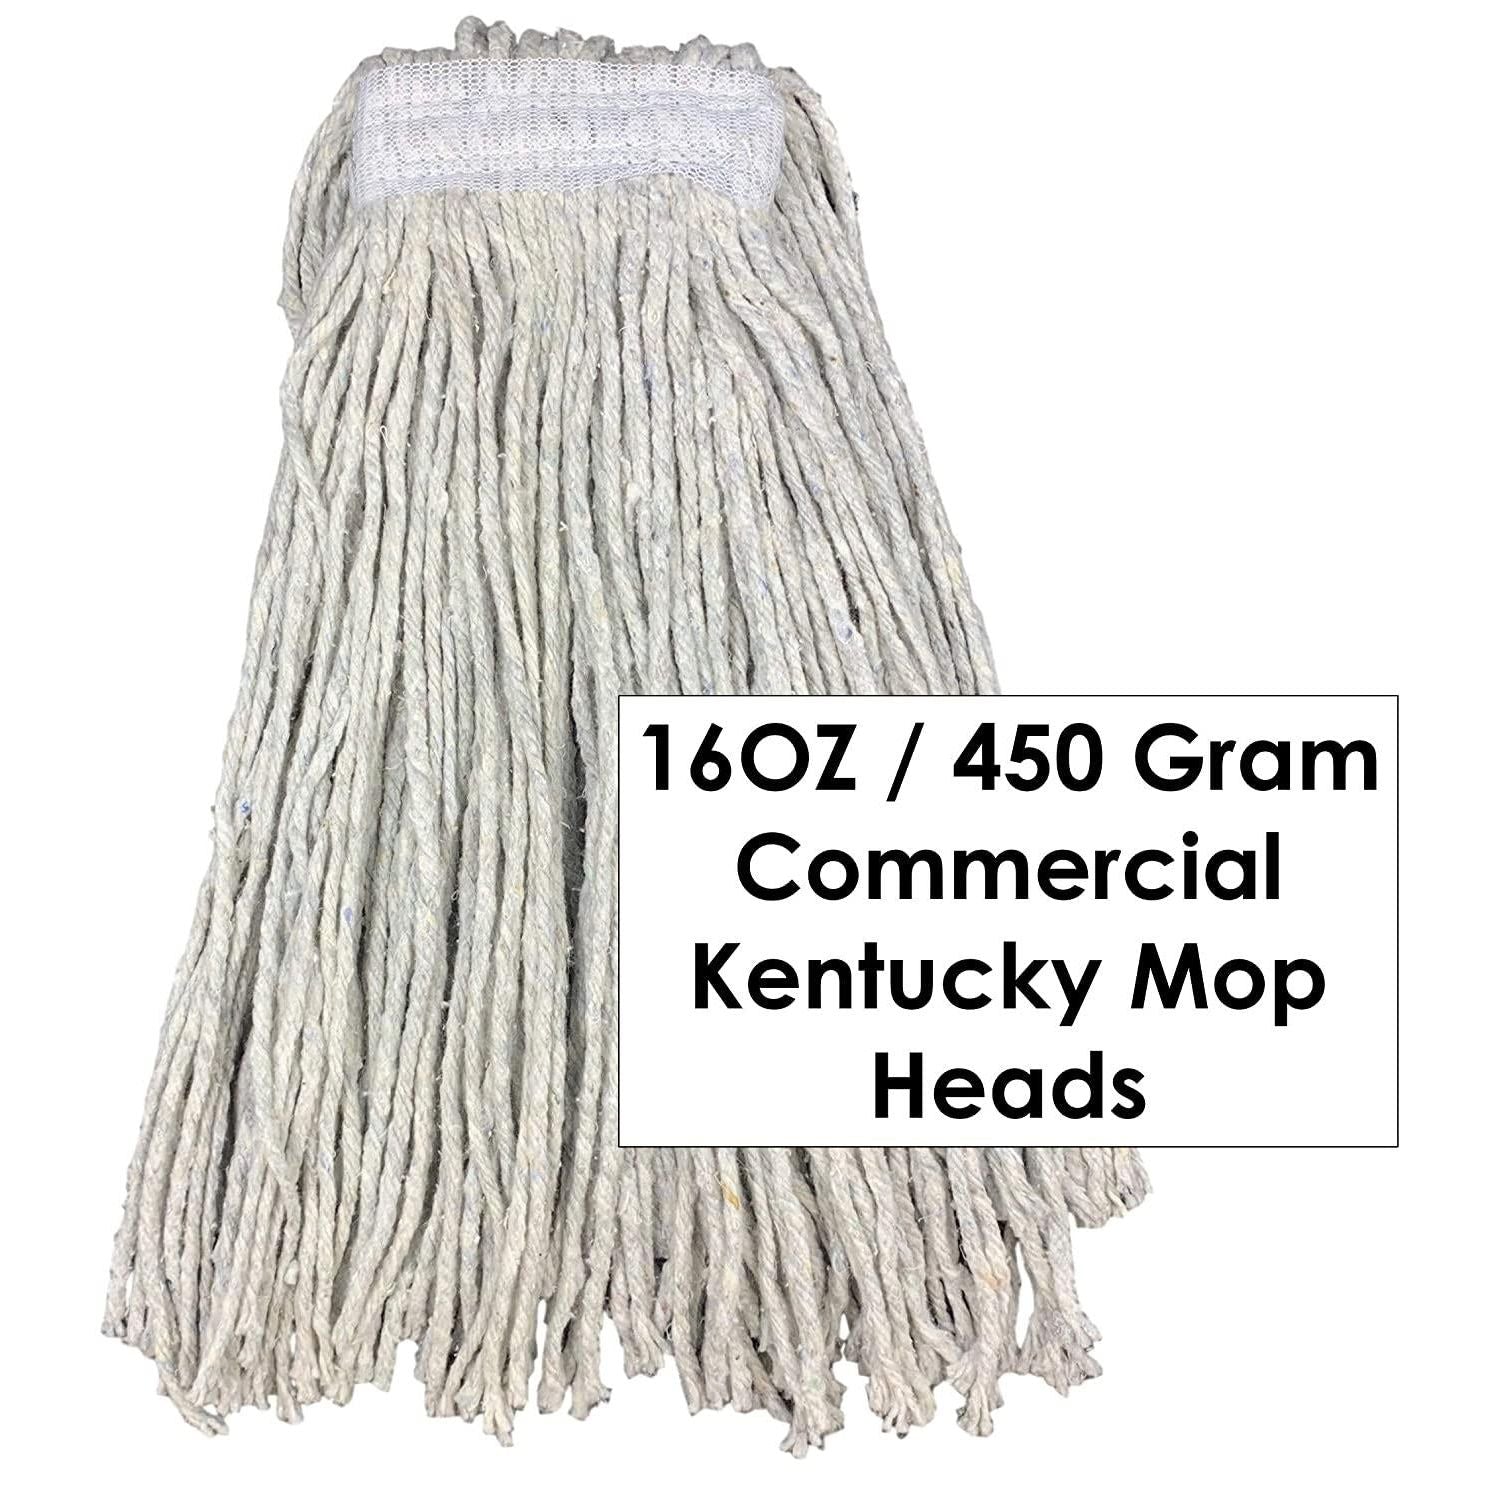 Kentucky Mop Head Pack of 10